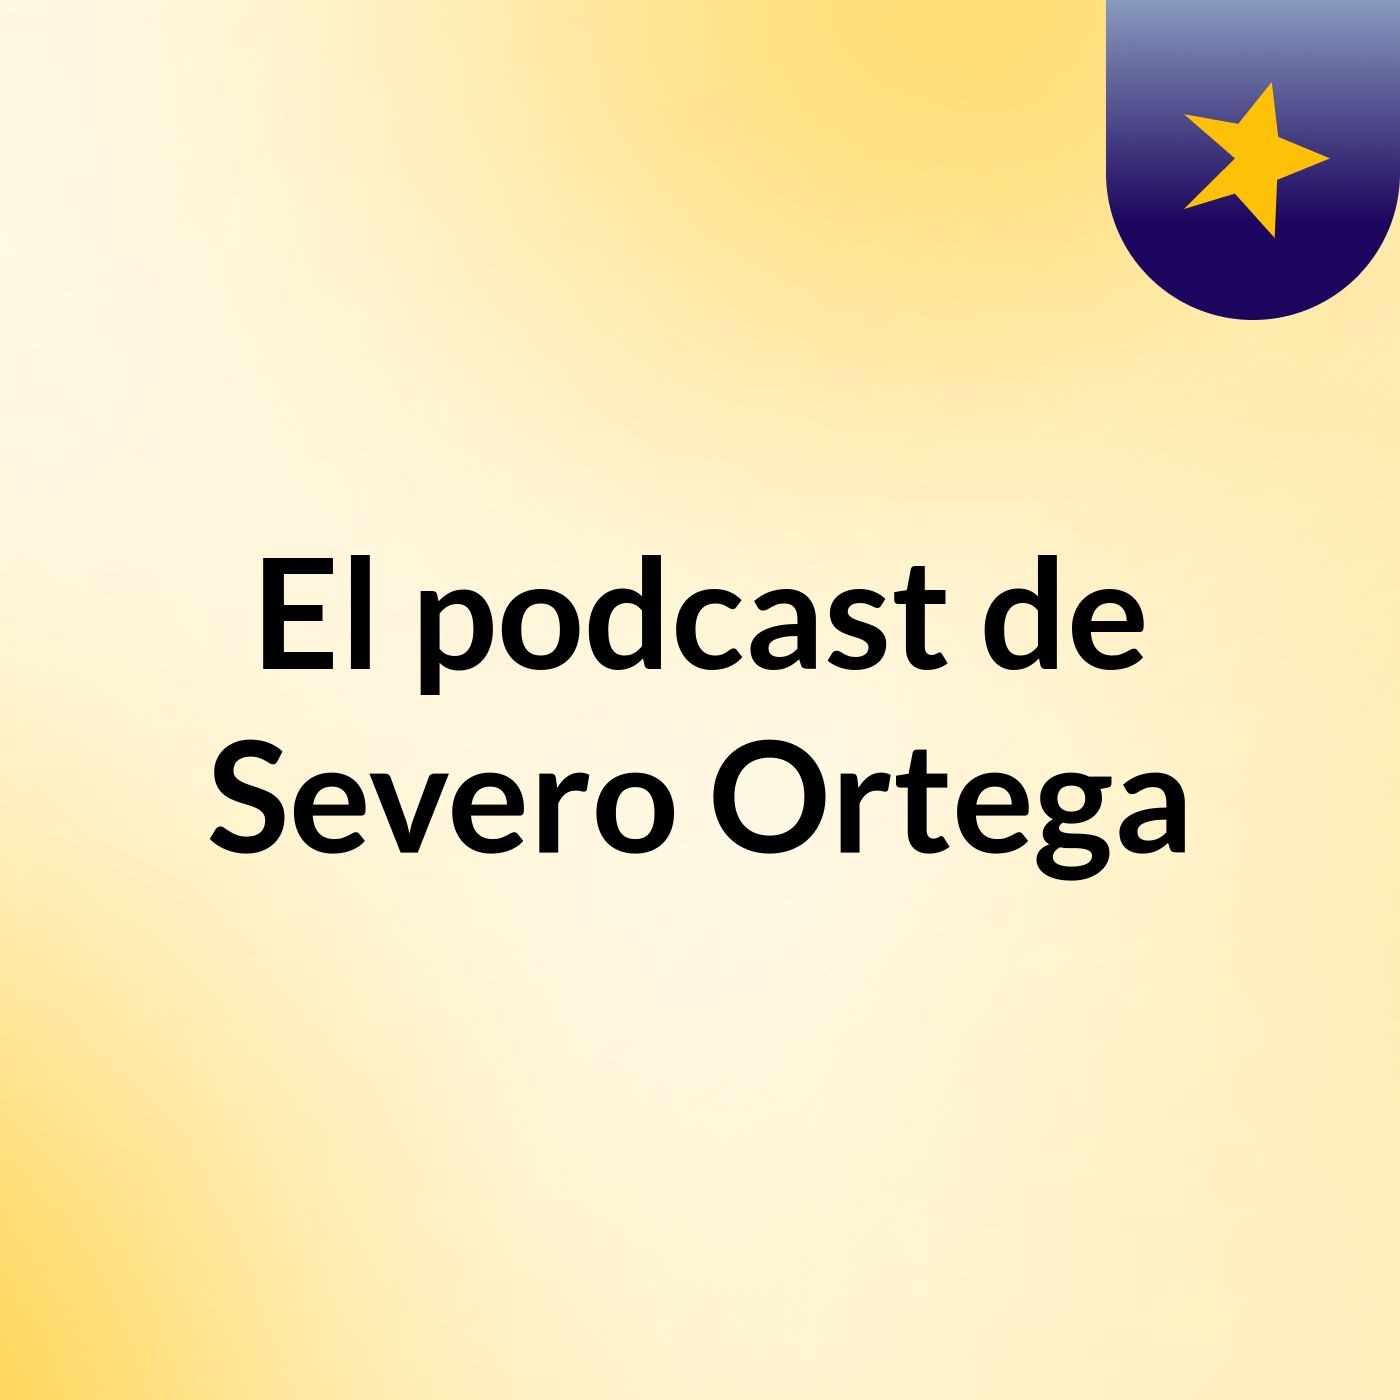 El podcast de Severo Ortega